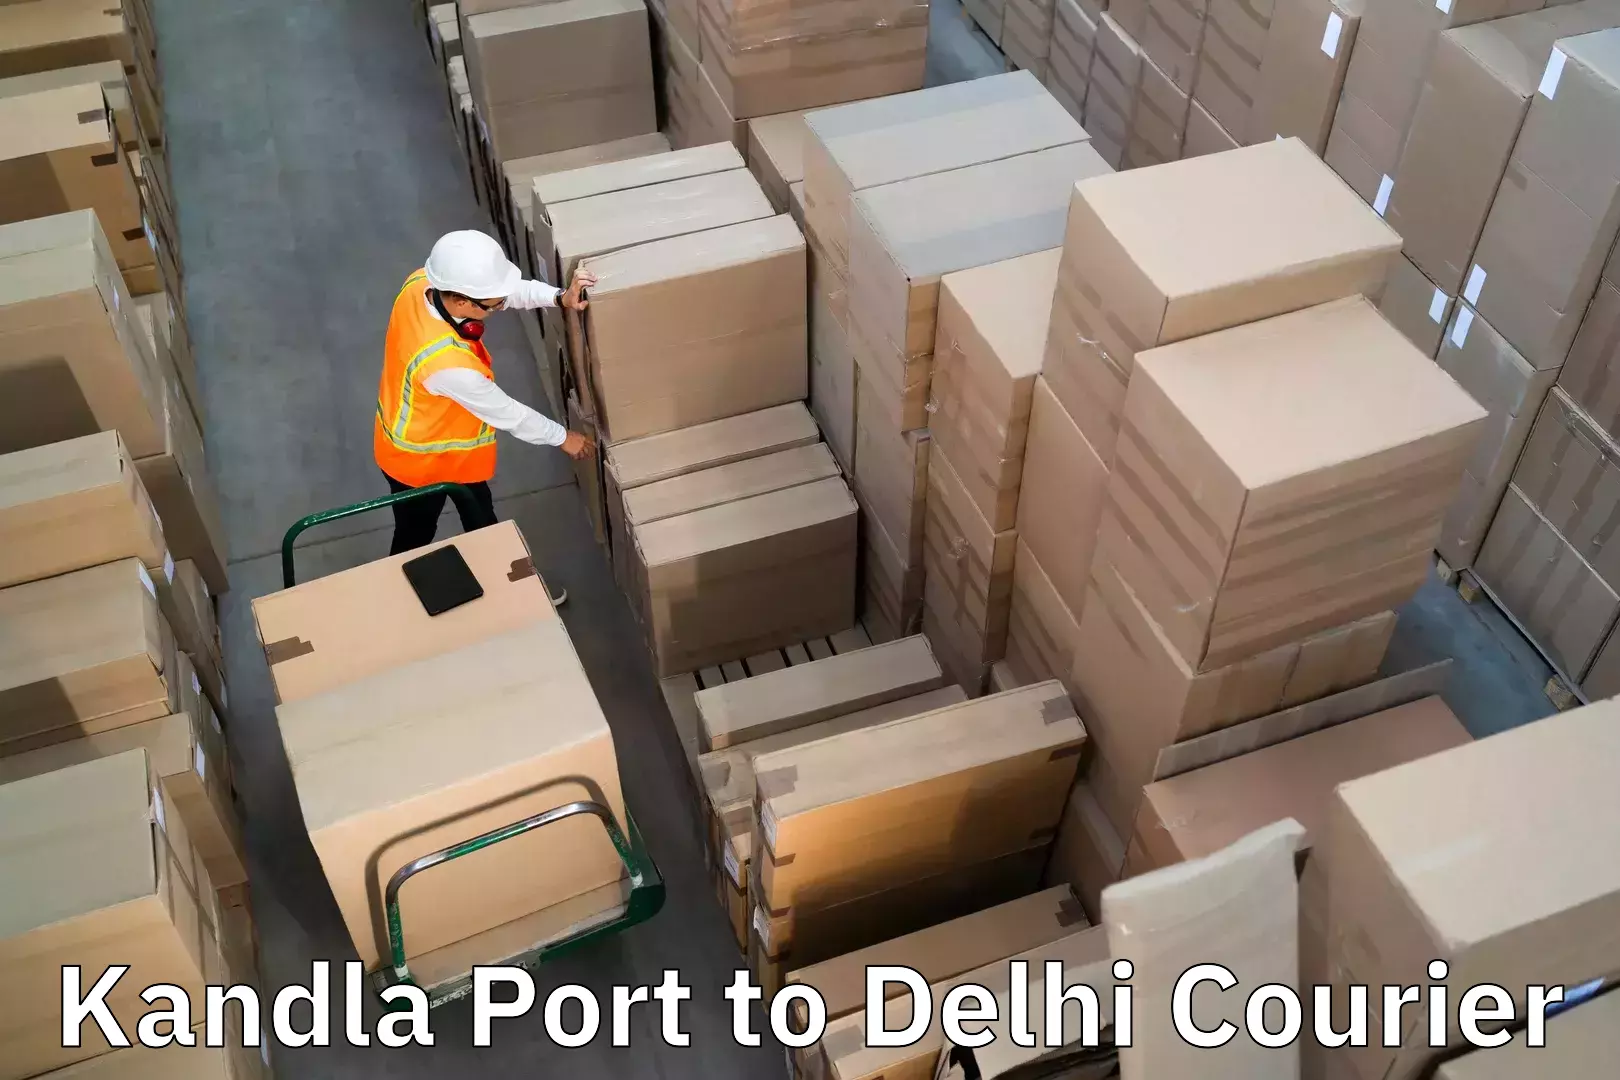 Luggage shipment strategy Kandla Port to University of Delhi